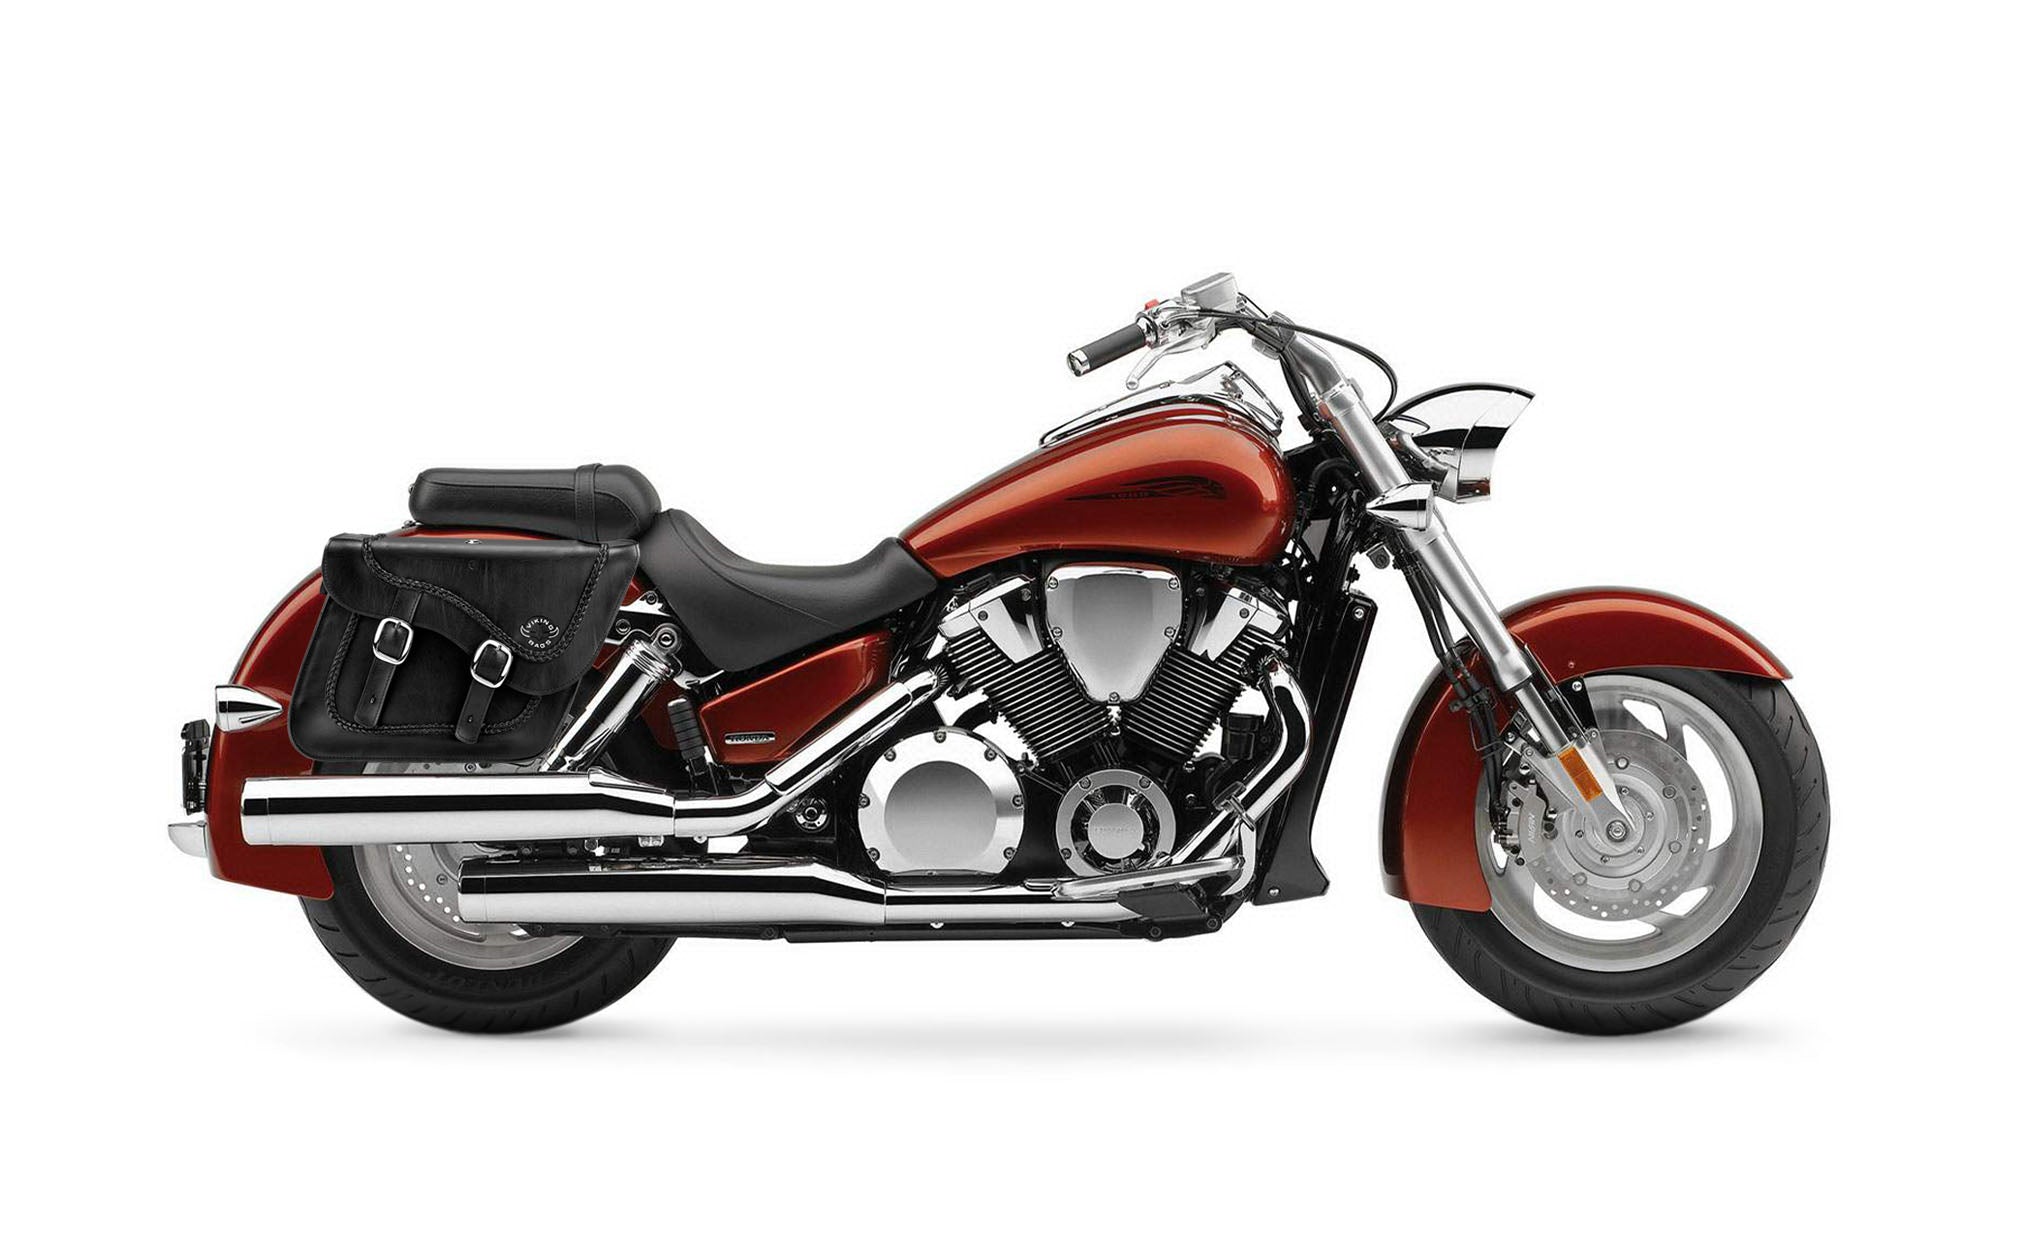 Viking Americano Honda Vtx 1800 N Braided Large Leather Motorcycle Saddlebags on Bike Photo @expand